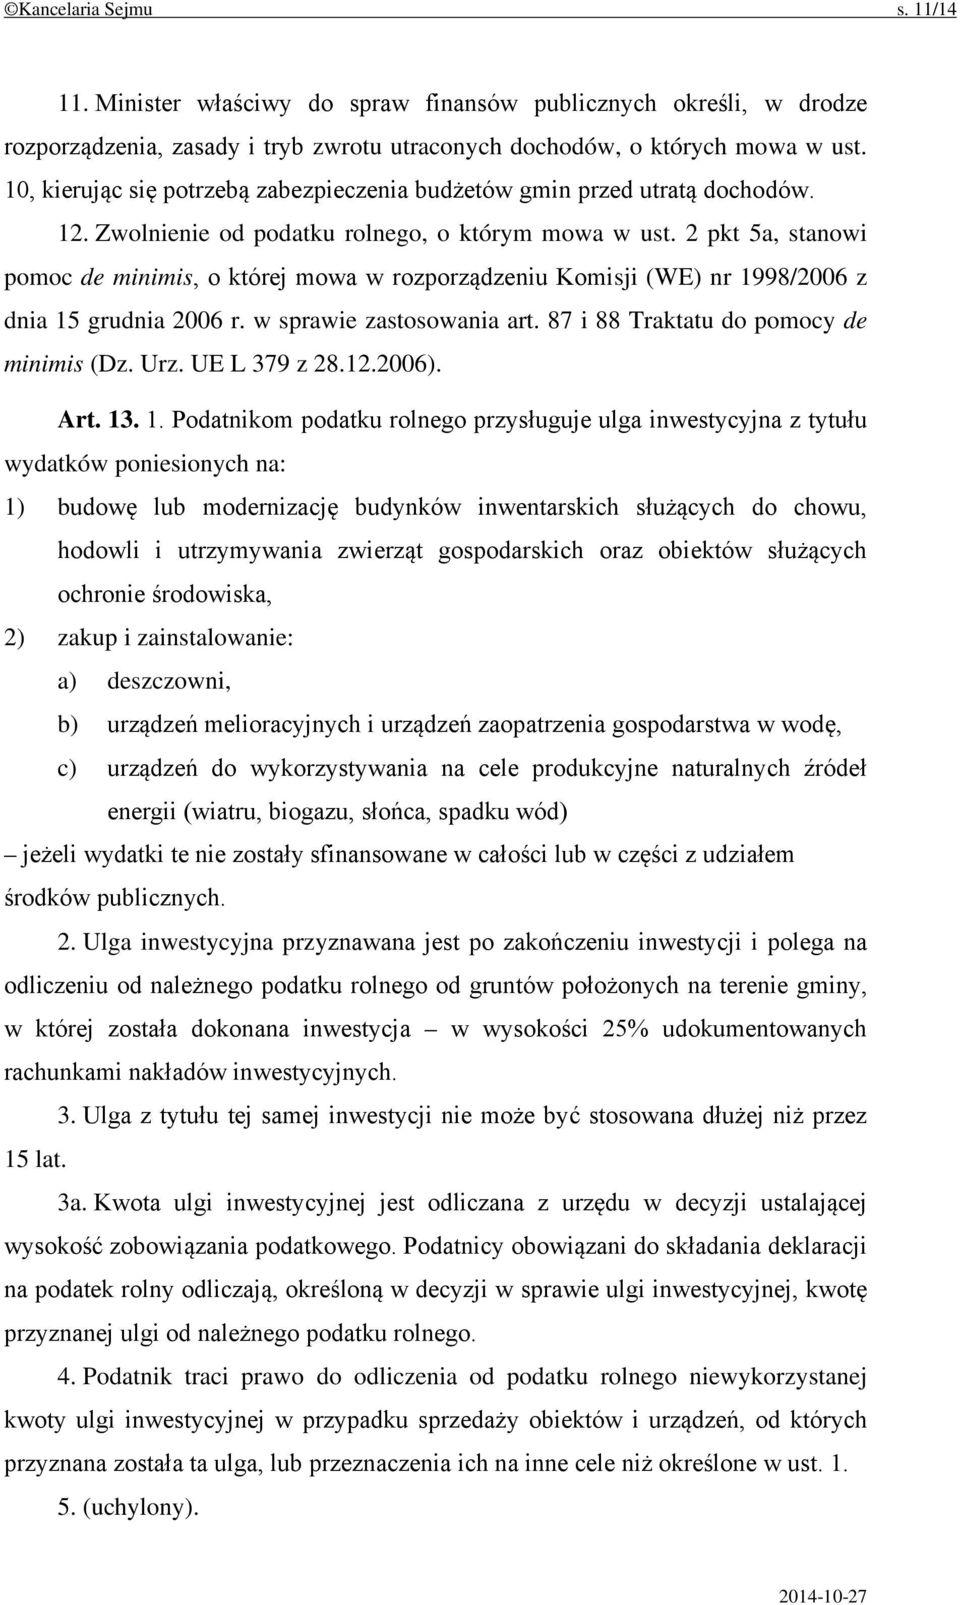 2 pkt 5a, stanowi pomoc de minimis, o której mowa w rozporządzeniu Komisji (WE) nr 1998/2006 z dnia 15 grudnia 2006 r. w sprawie zastosowania art. 87 i 88 Traktatu do pomocy de minimis (Dz. Urz.